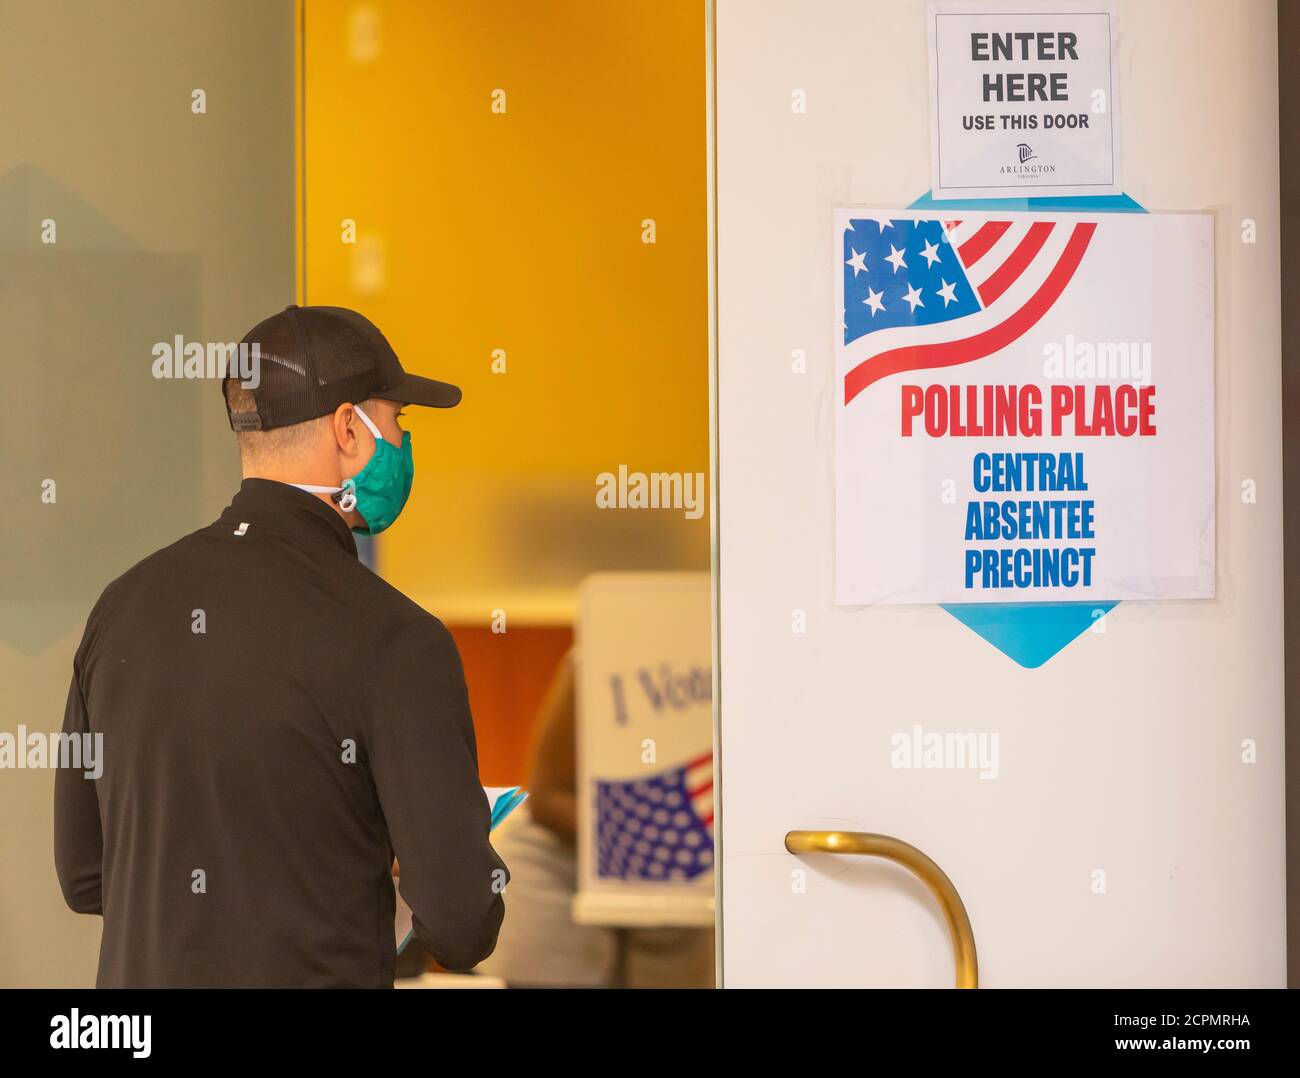 ARLINGTON, VIRGINIA, USA, 18. SEPTEMBER 2020 - Mann betritt Wahlplatz während des ersten Tages der vorzeitigen Wahl, 2020 Präsidentschaftswahl. Kredit: ©Rob Crandall/Alamy Live Nachrichten Stockfoto